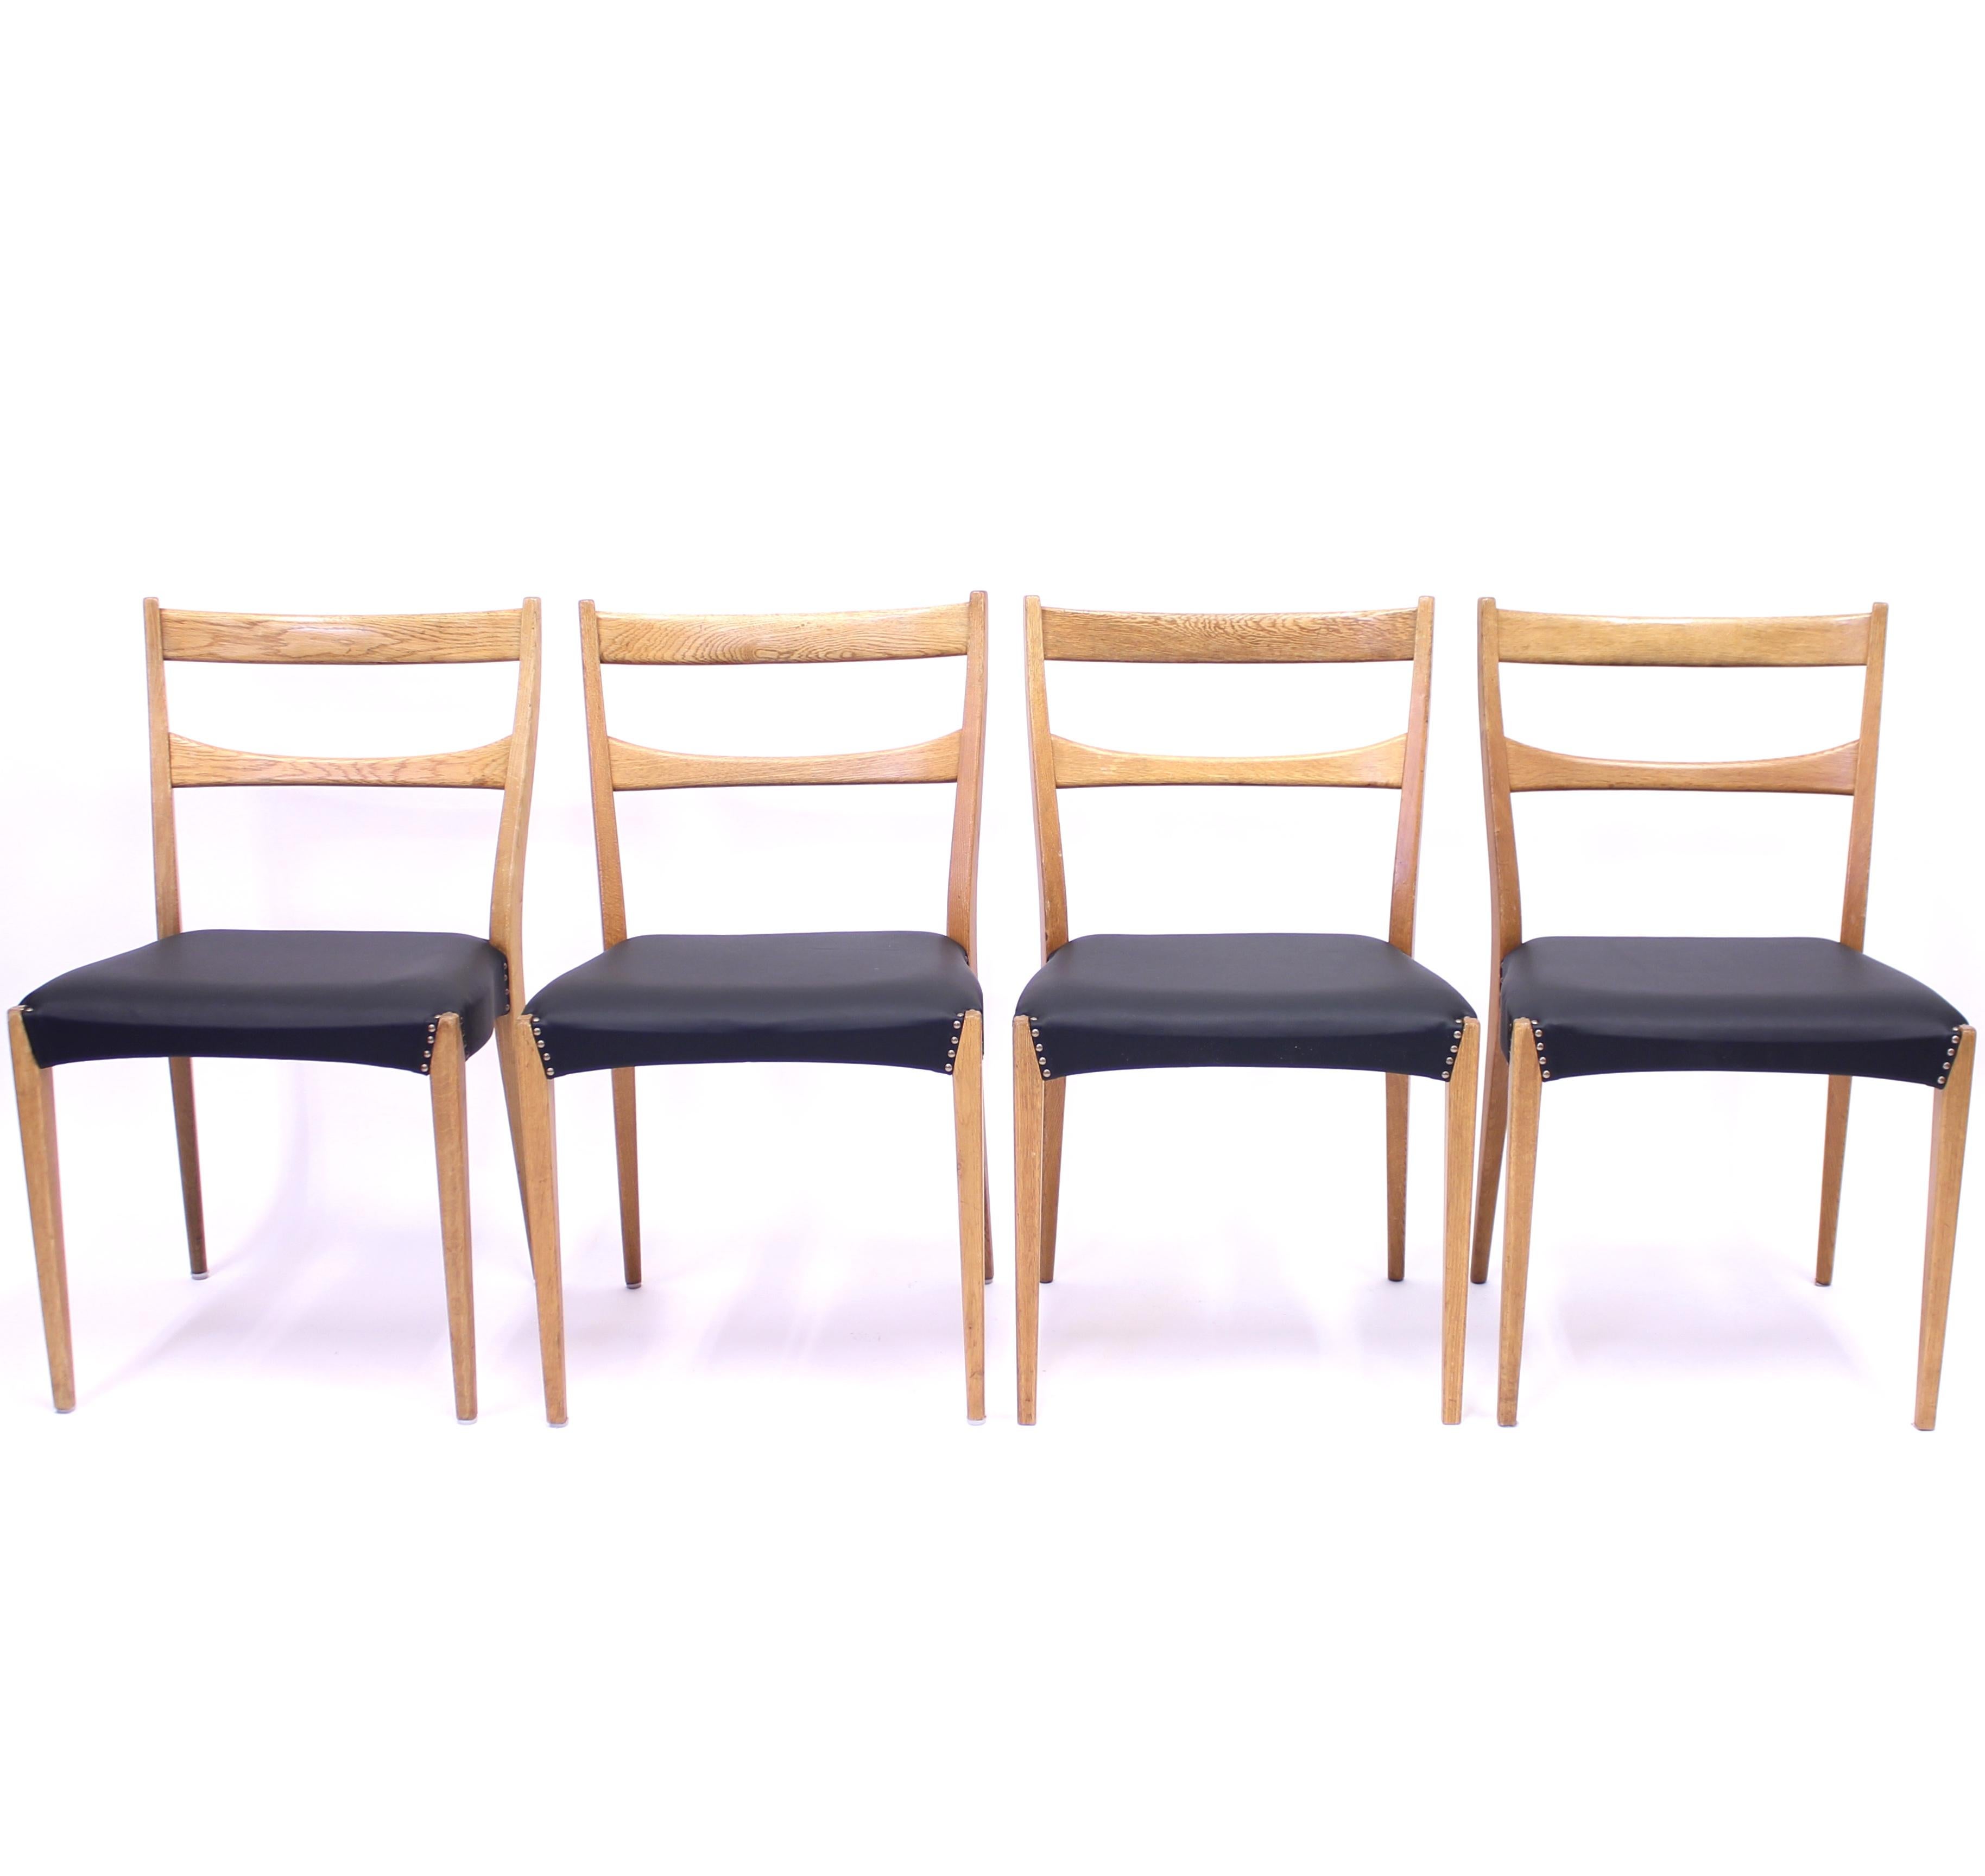 Skandinavische Esszimmerstühle aus Eiche im Stil von Josef Frank für Svenskt Tenn, wahrscheinlich aus Schweden, aus der Mitte des Jahrhunderts mit neuen schwarzen Ledersitzen. Leichtes Aussehen durch den schön gestalteten, sauberen Rahmen. Guter